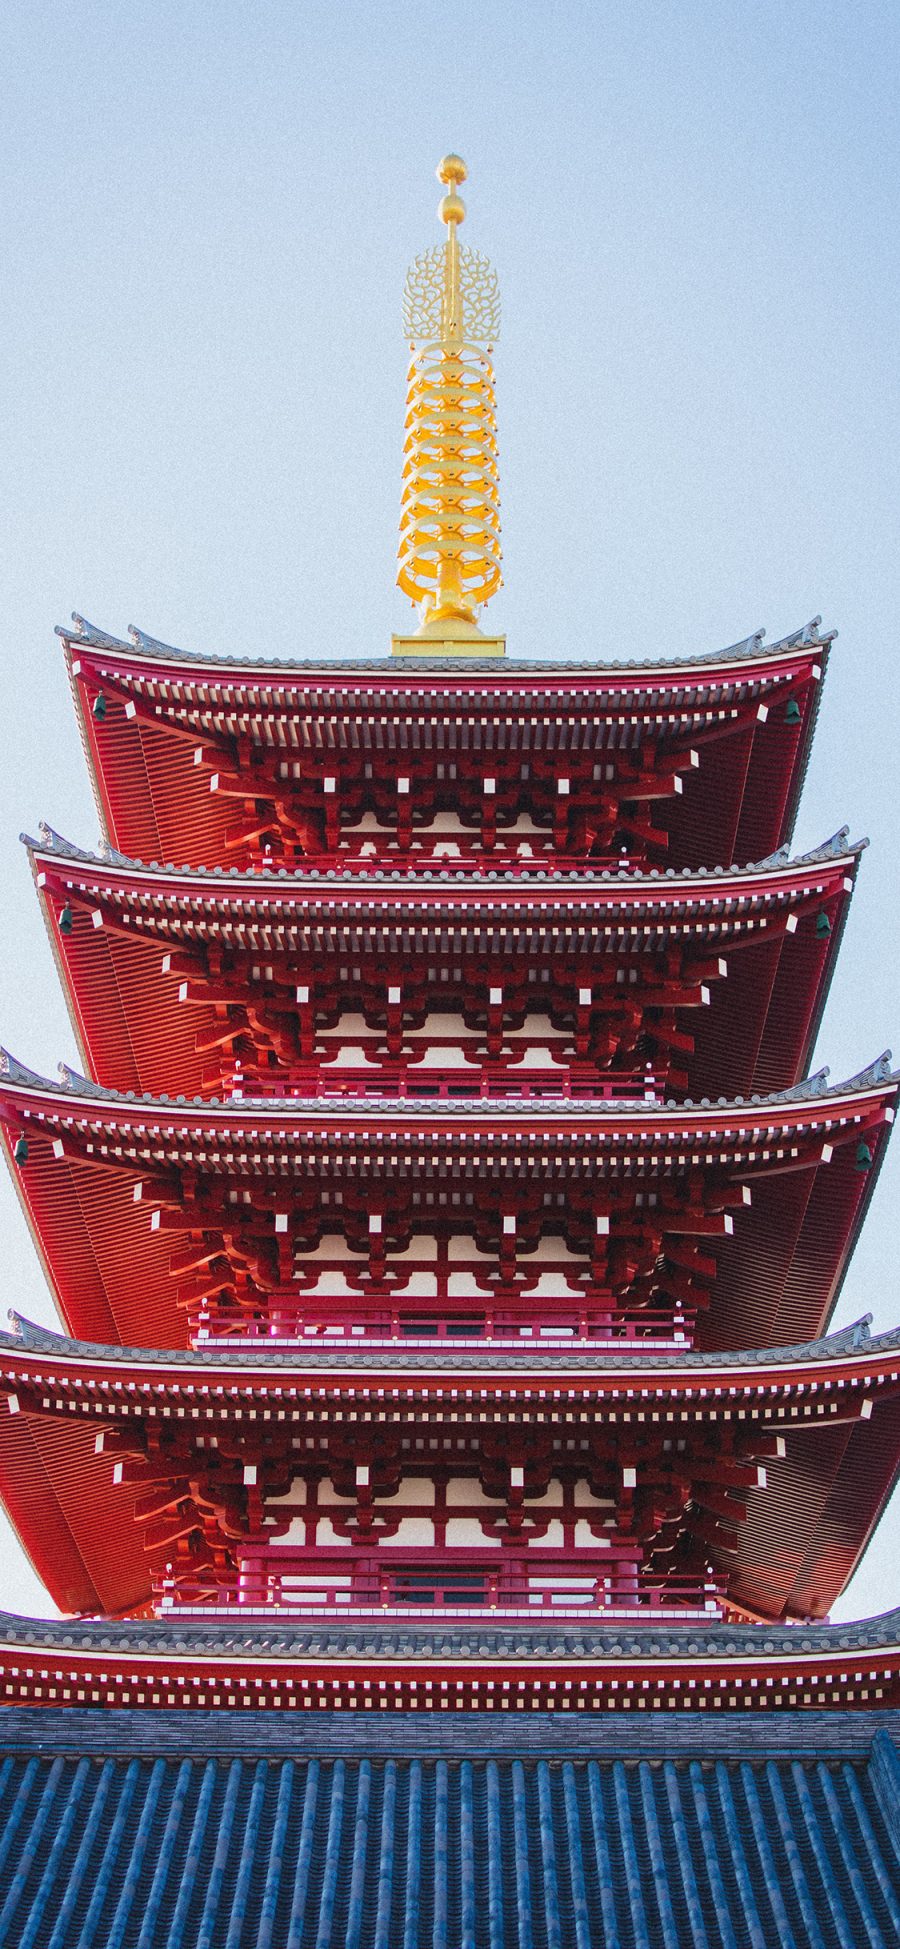 [2436×1125]浅草寺 寺庙 塔楼 日本 苹果手机壁纸图片